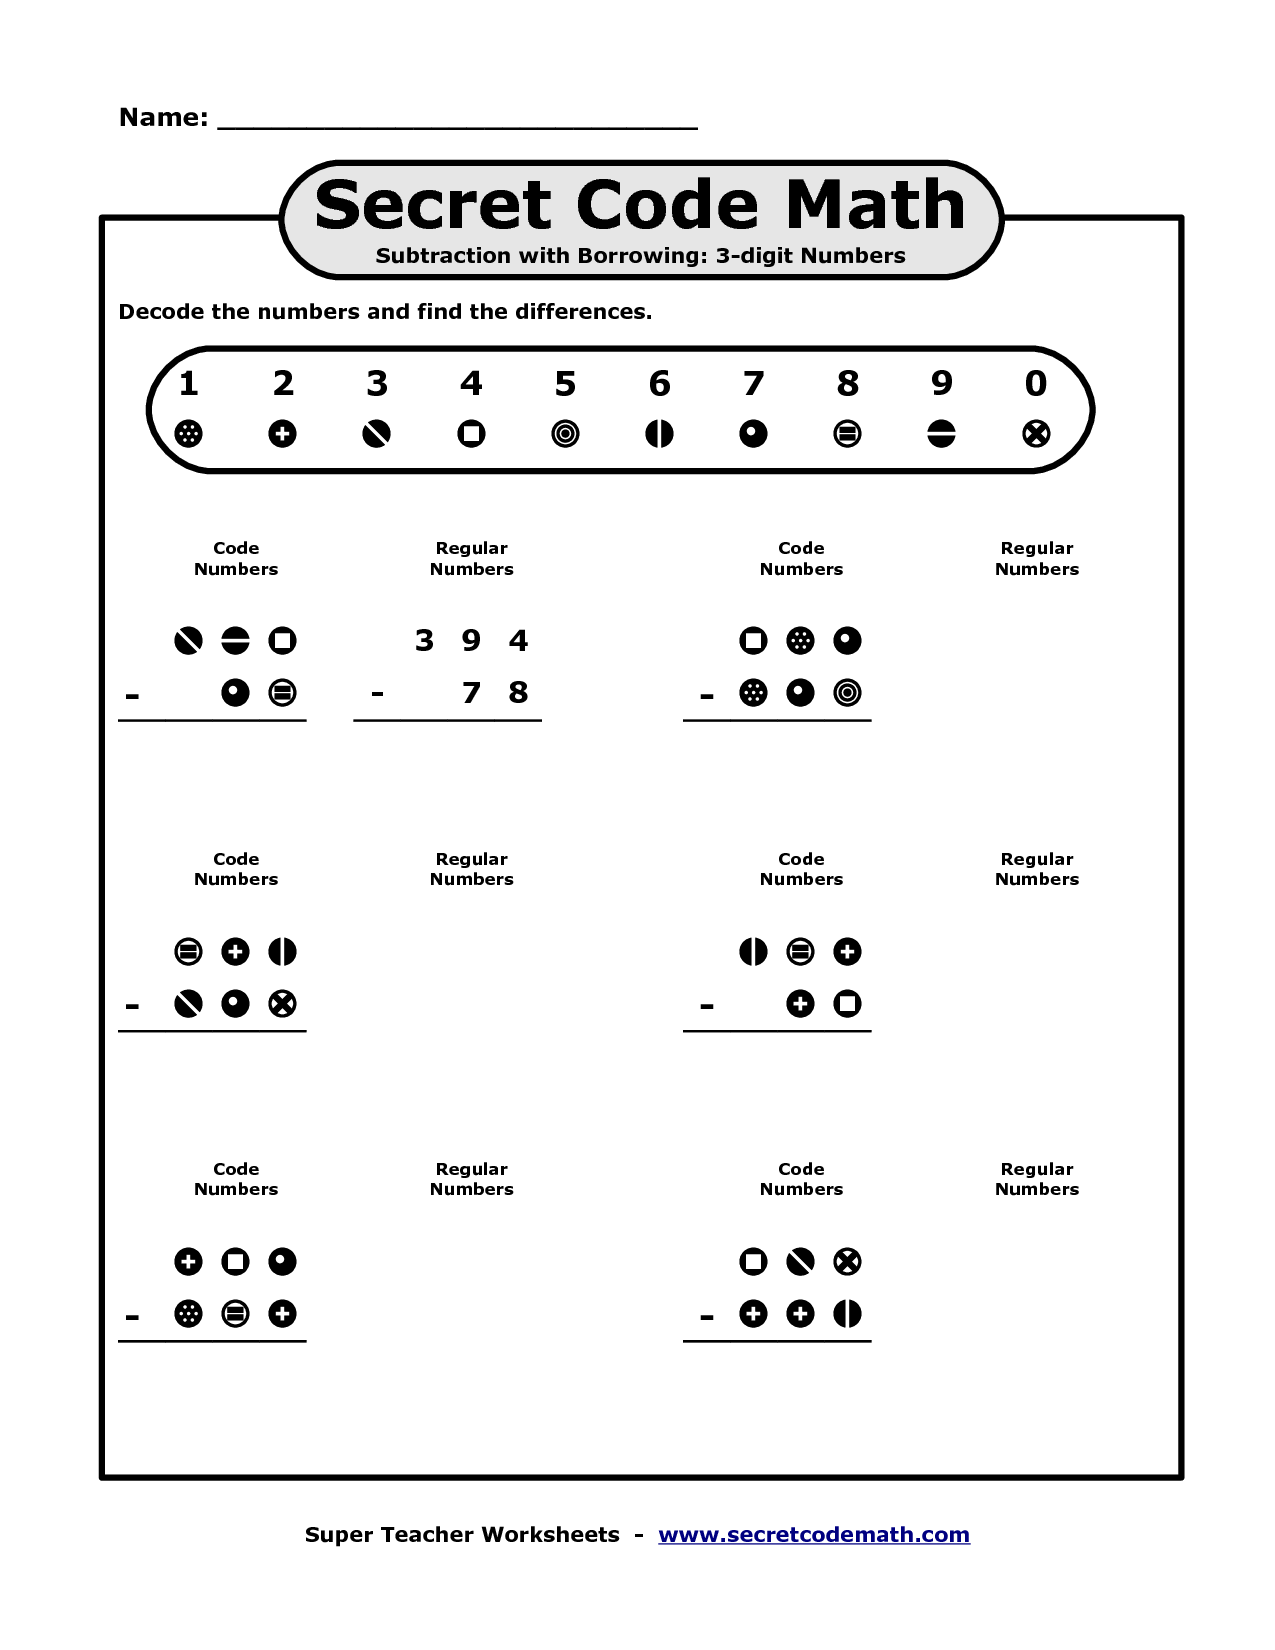 10 Best Images Of Hidden Message Worksheets Secret Message Worksheets Decode The Secret